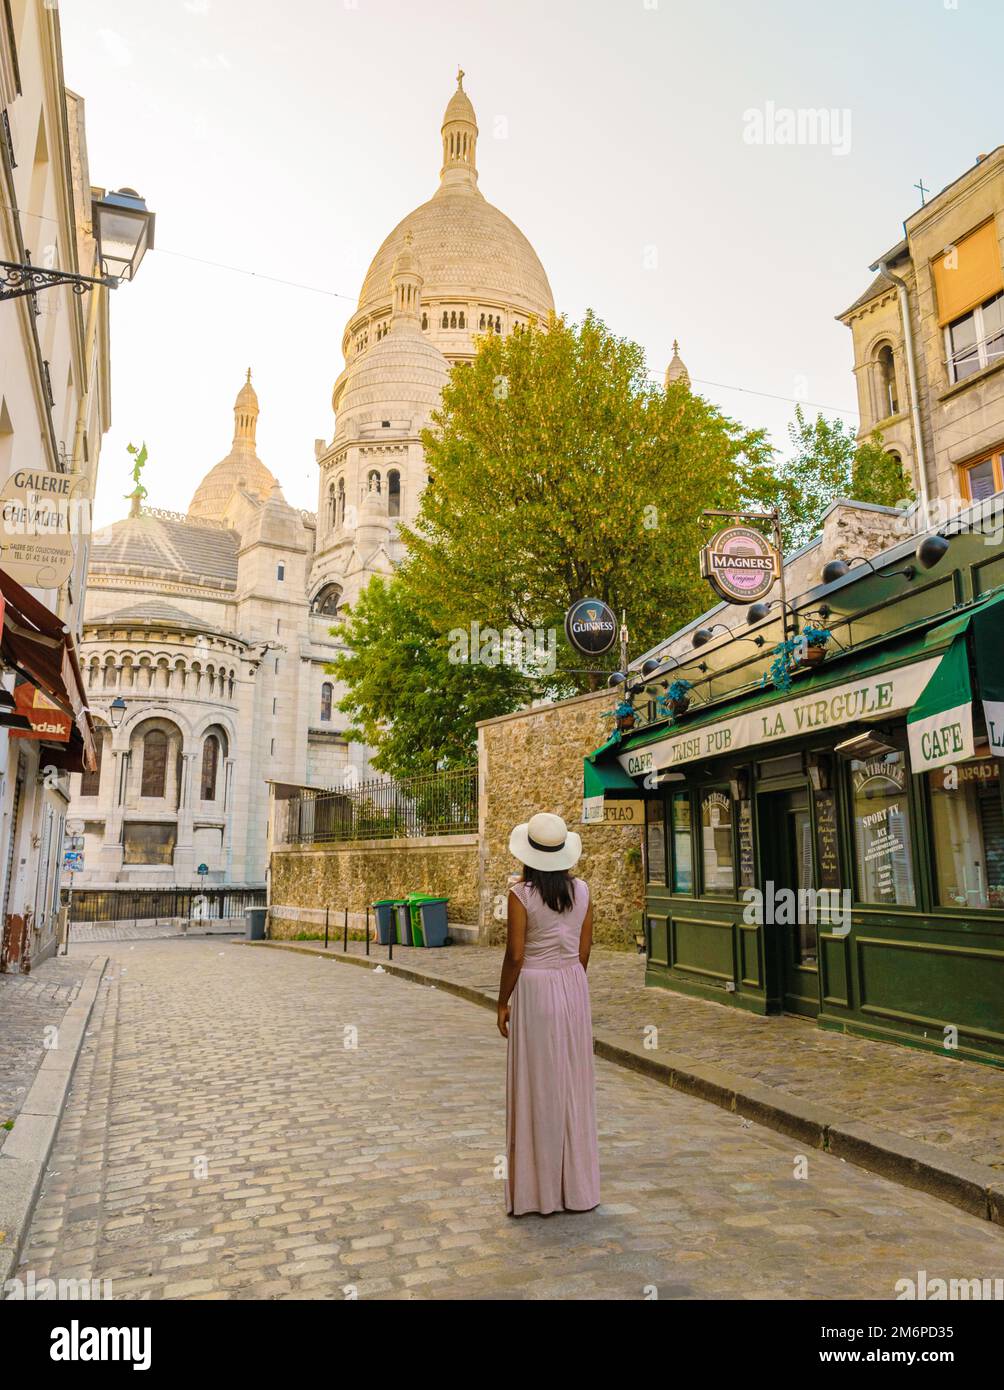 Strade di Montmartre Parigi Francia al mattino presto con caffè e ristoranti, la Maison Rose Foto Stock